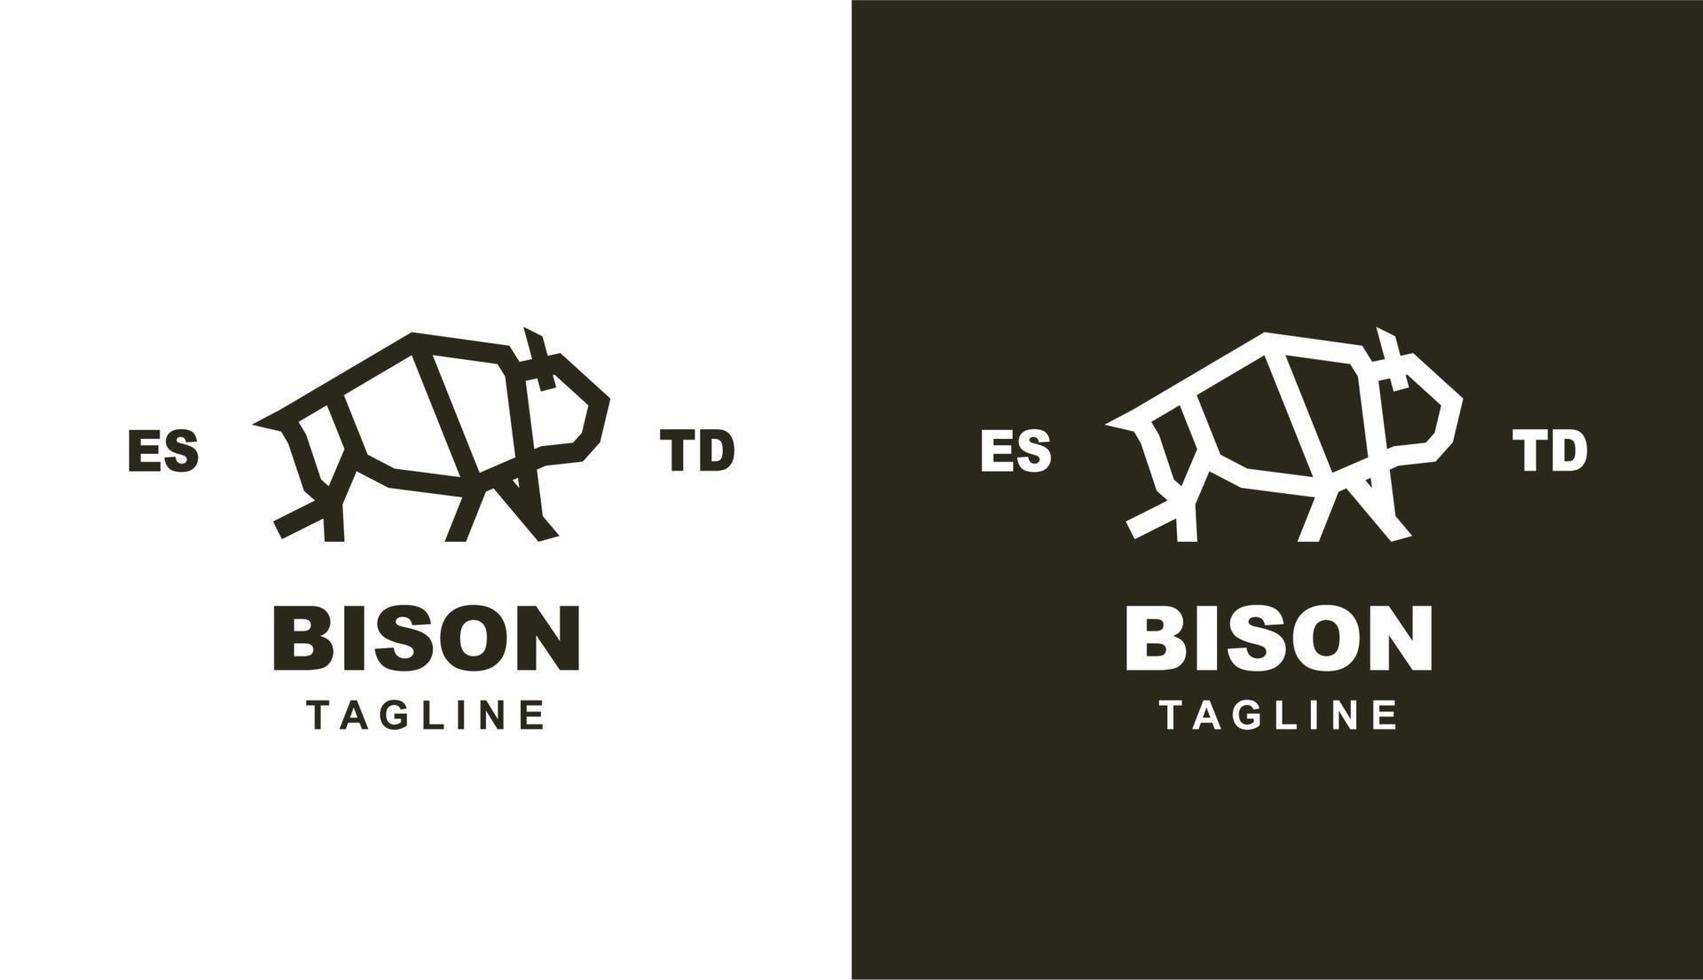 bison geometris monoline retro. tauro simple para logotipo de marca y empresa vector